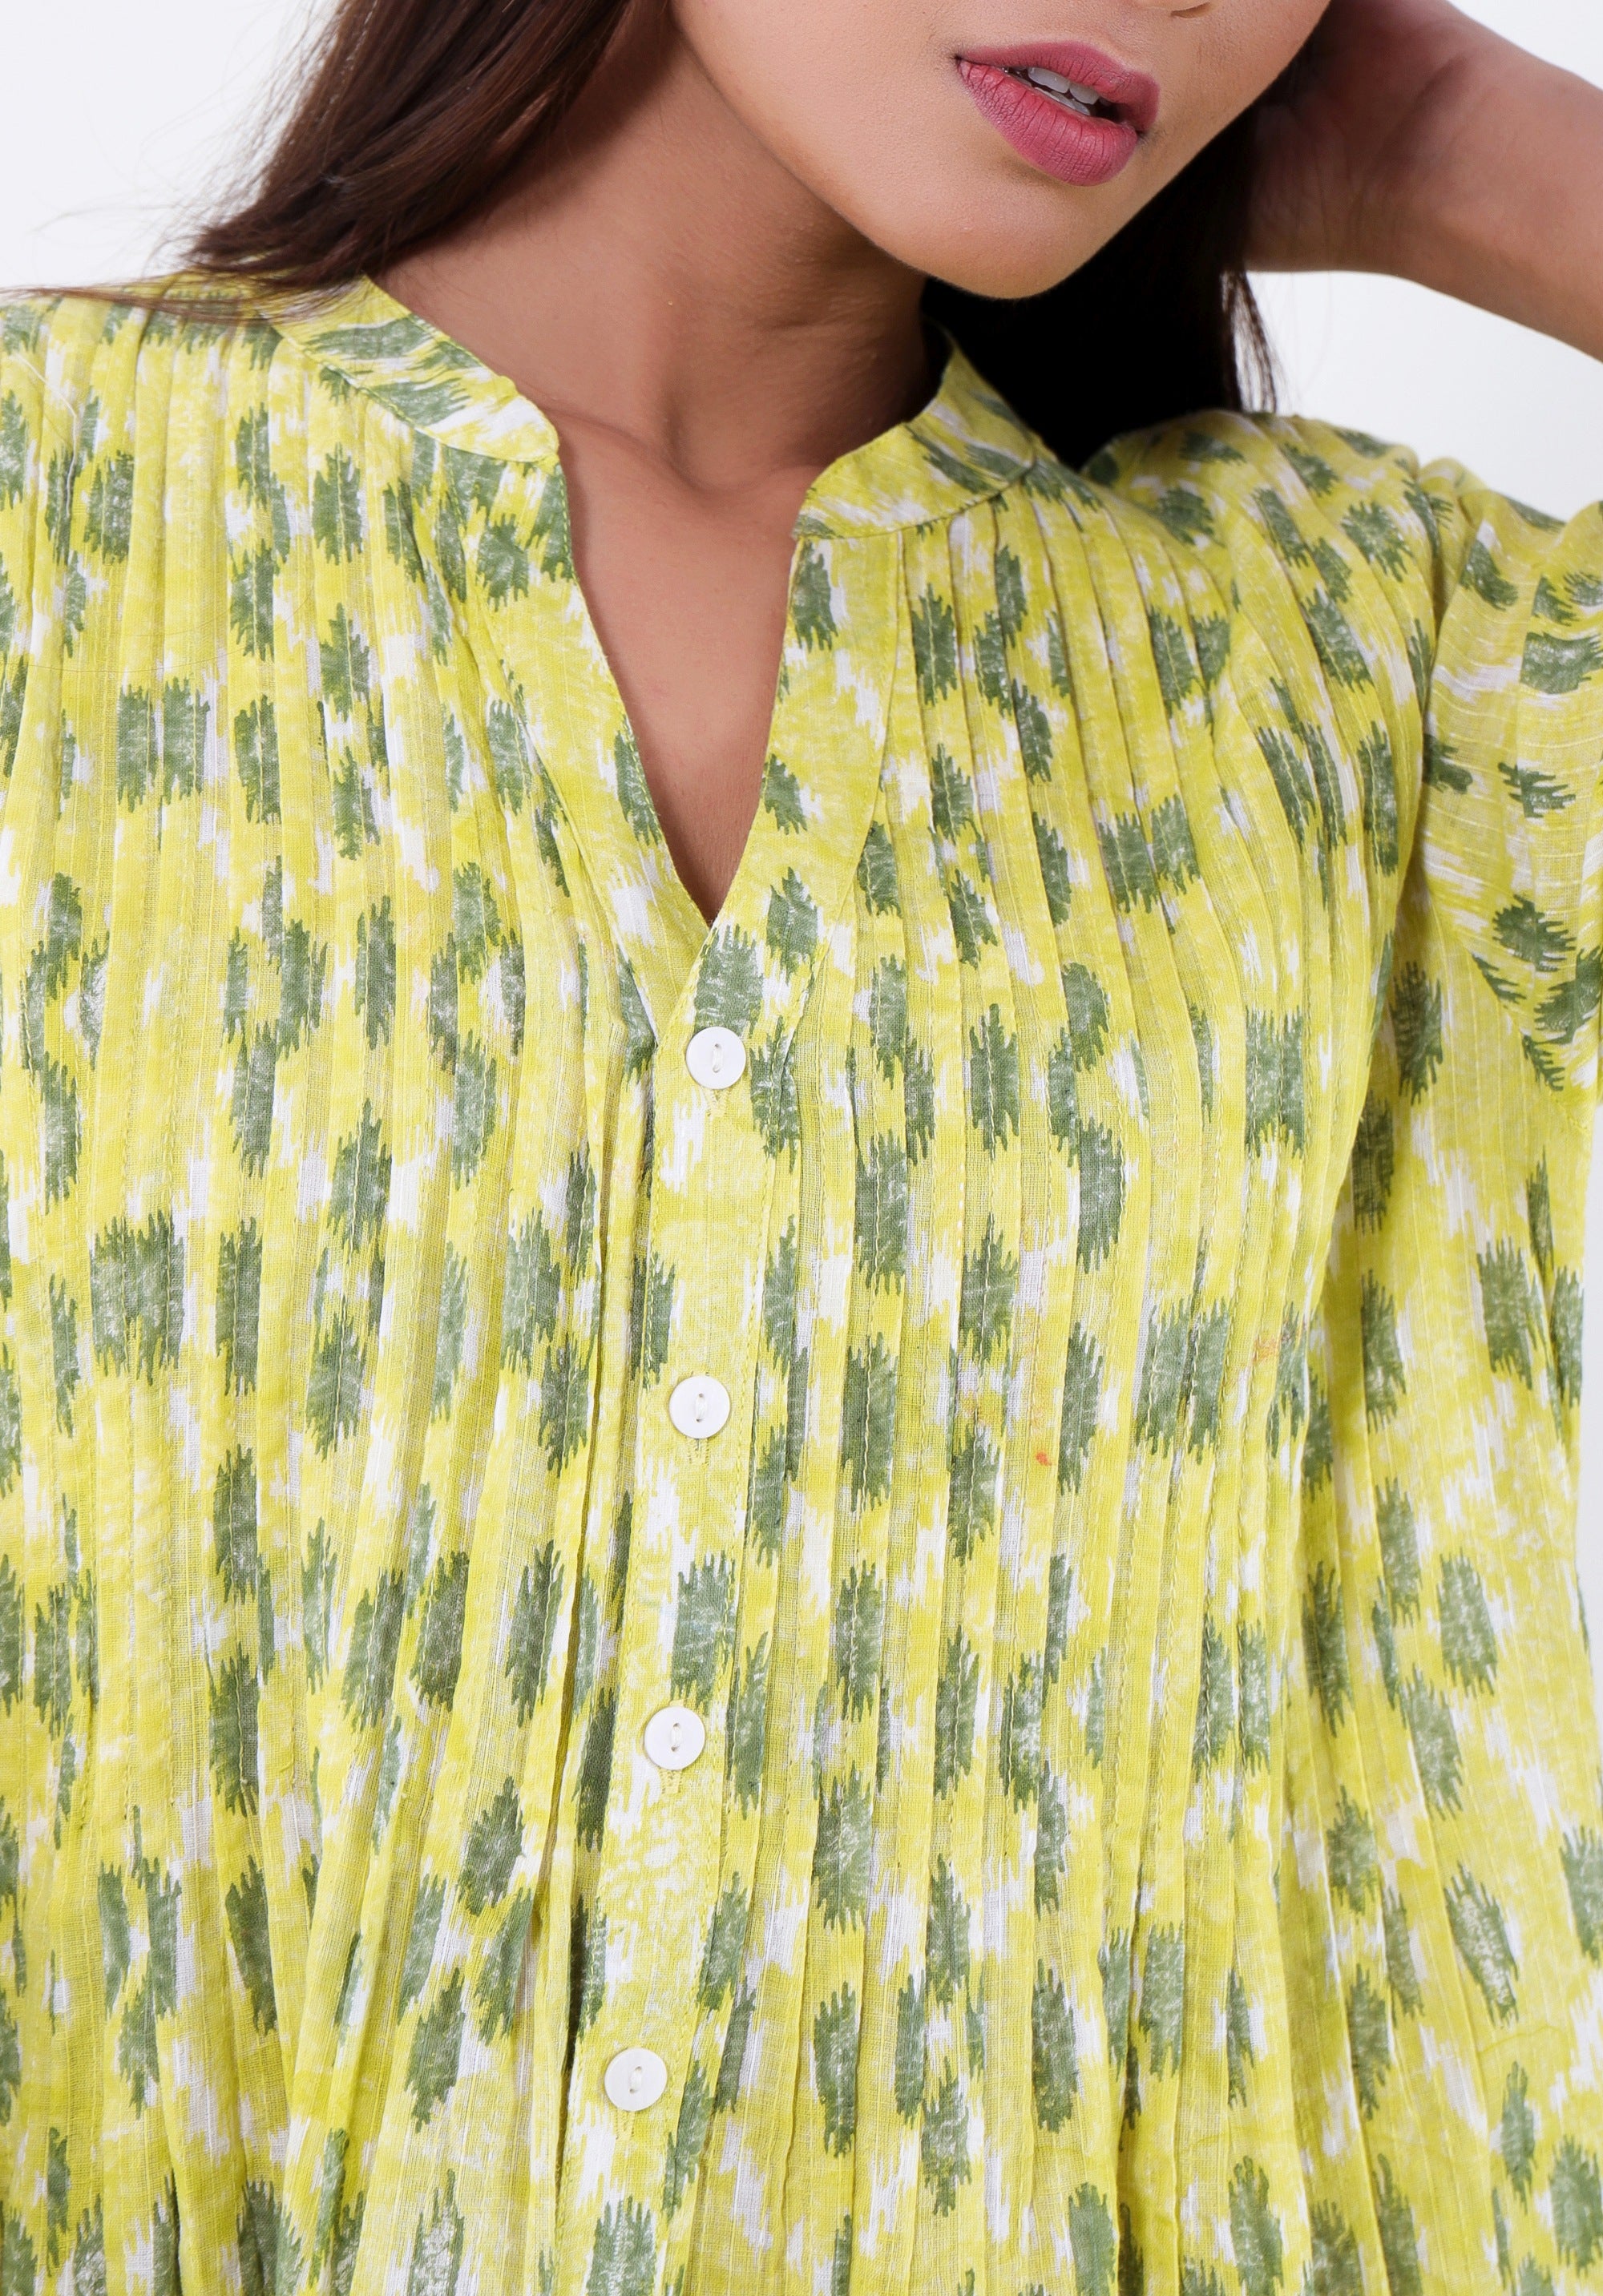 Women Printed dress Kris pin tuck ikkat kantha Yellow